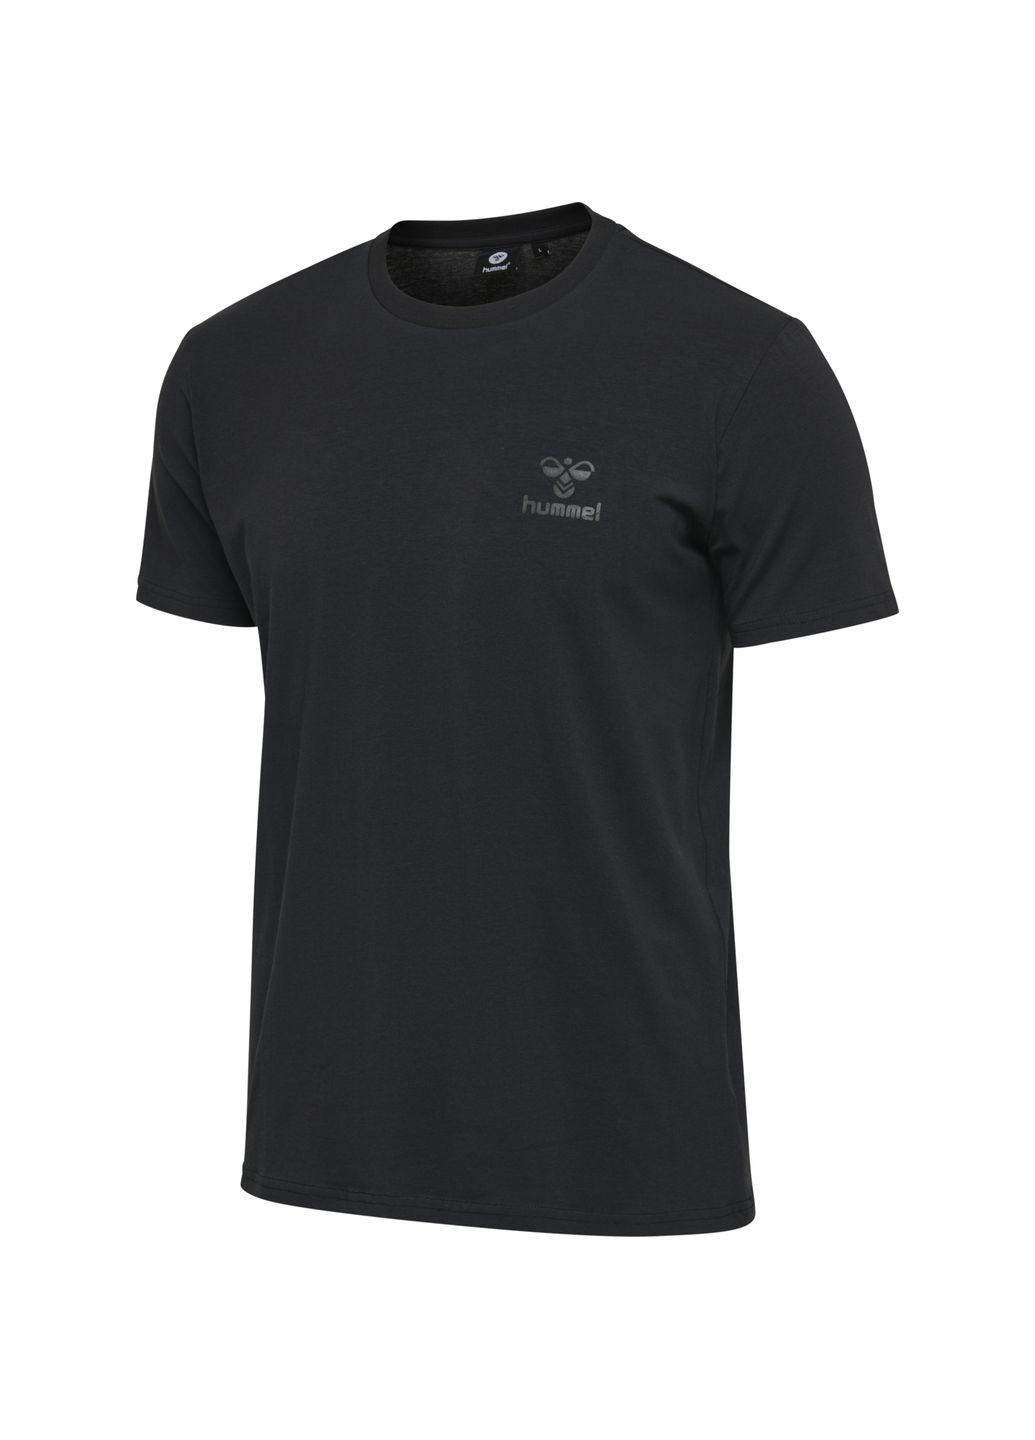 Черная футболка с логотипом для мужчины 206424 Hummel